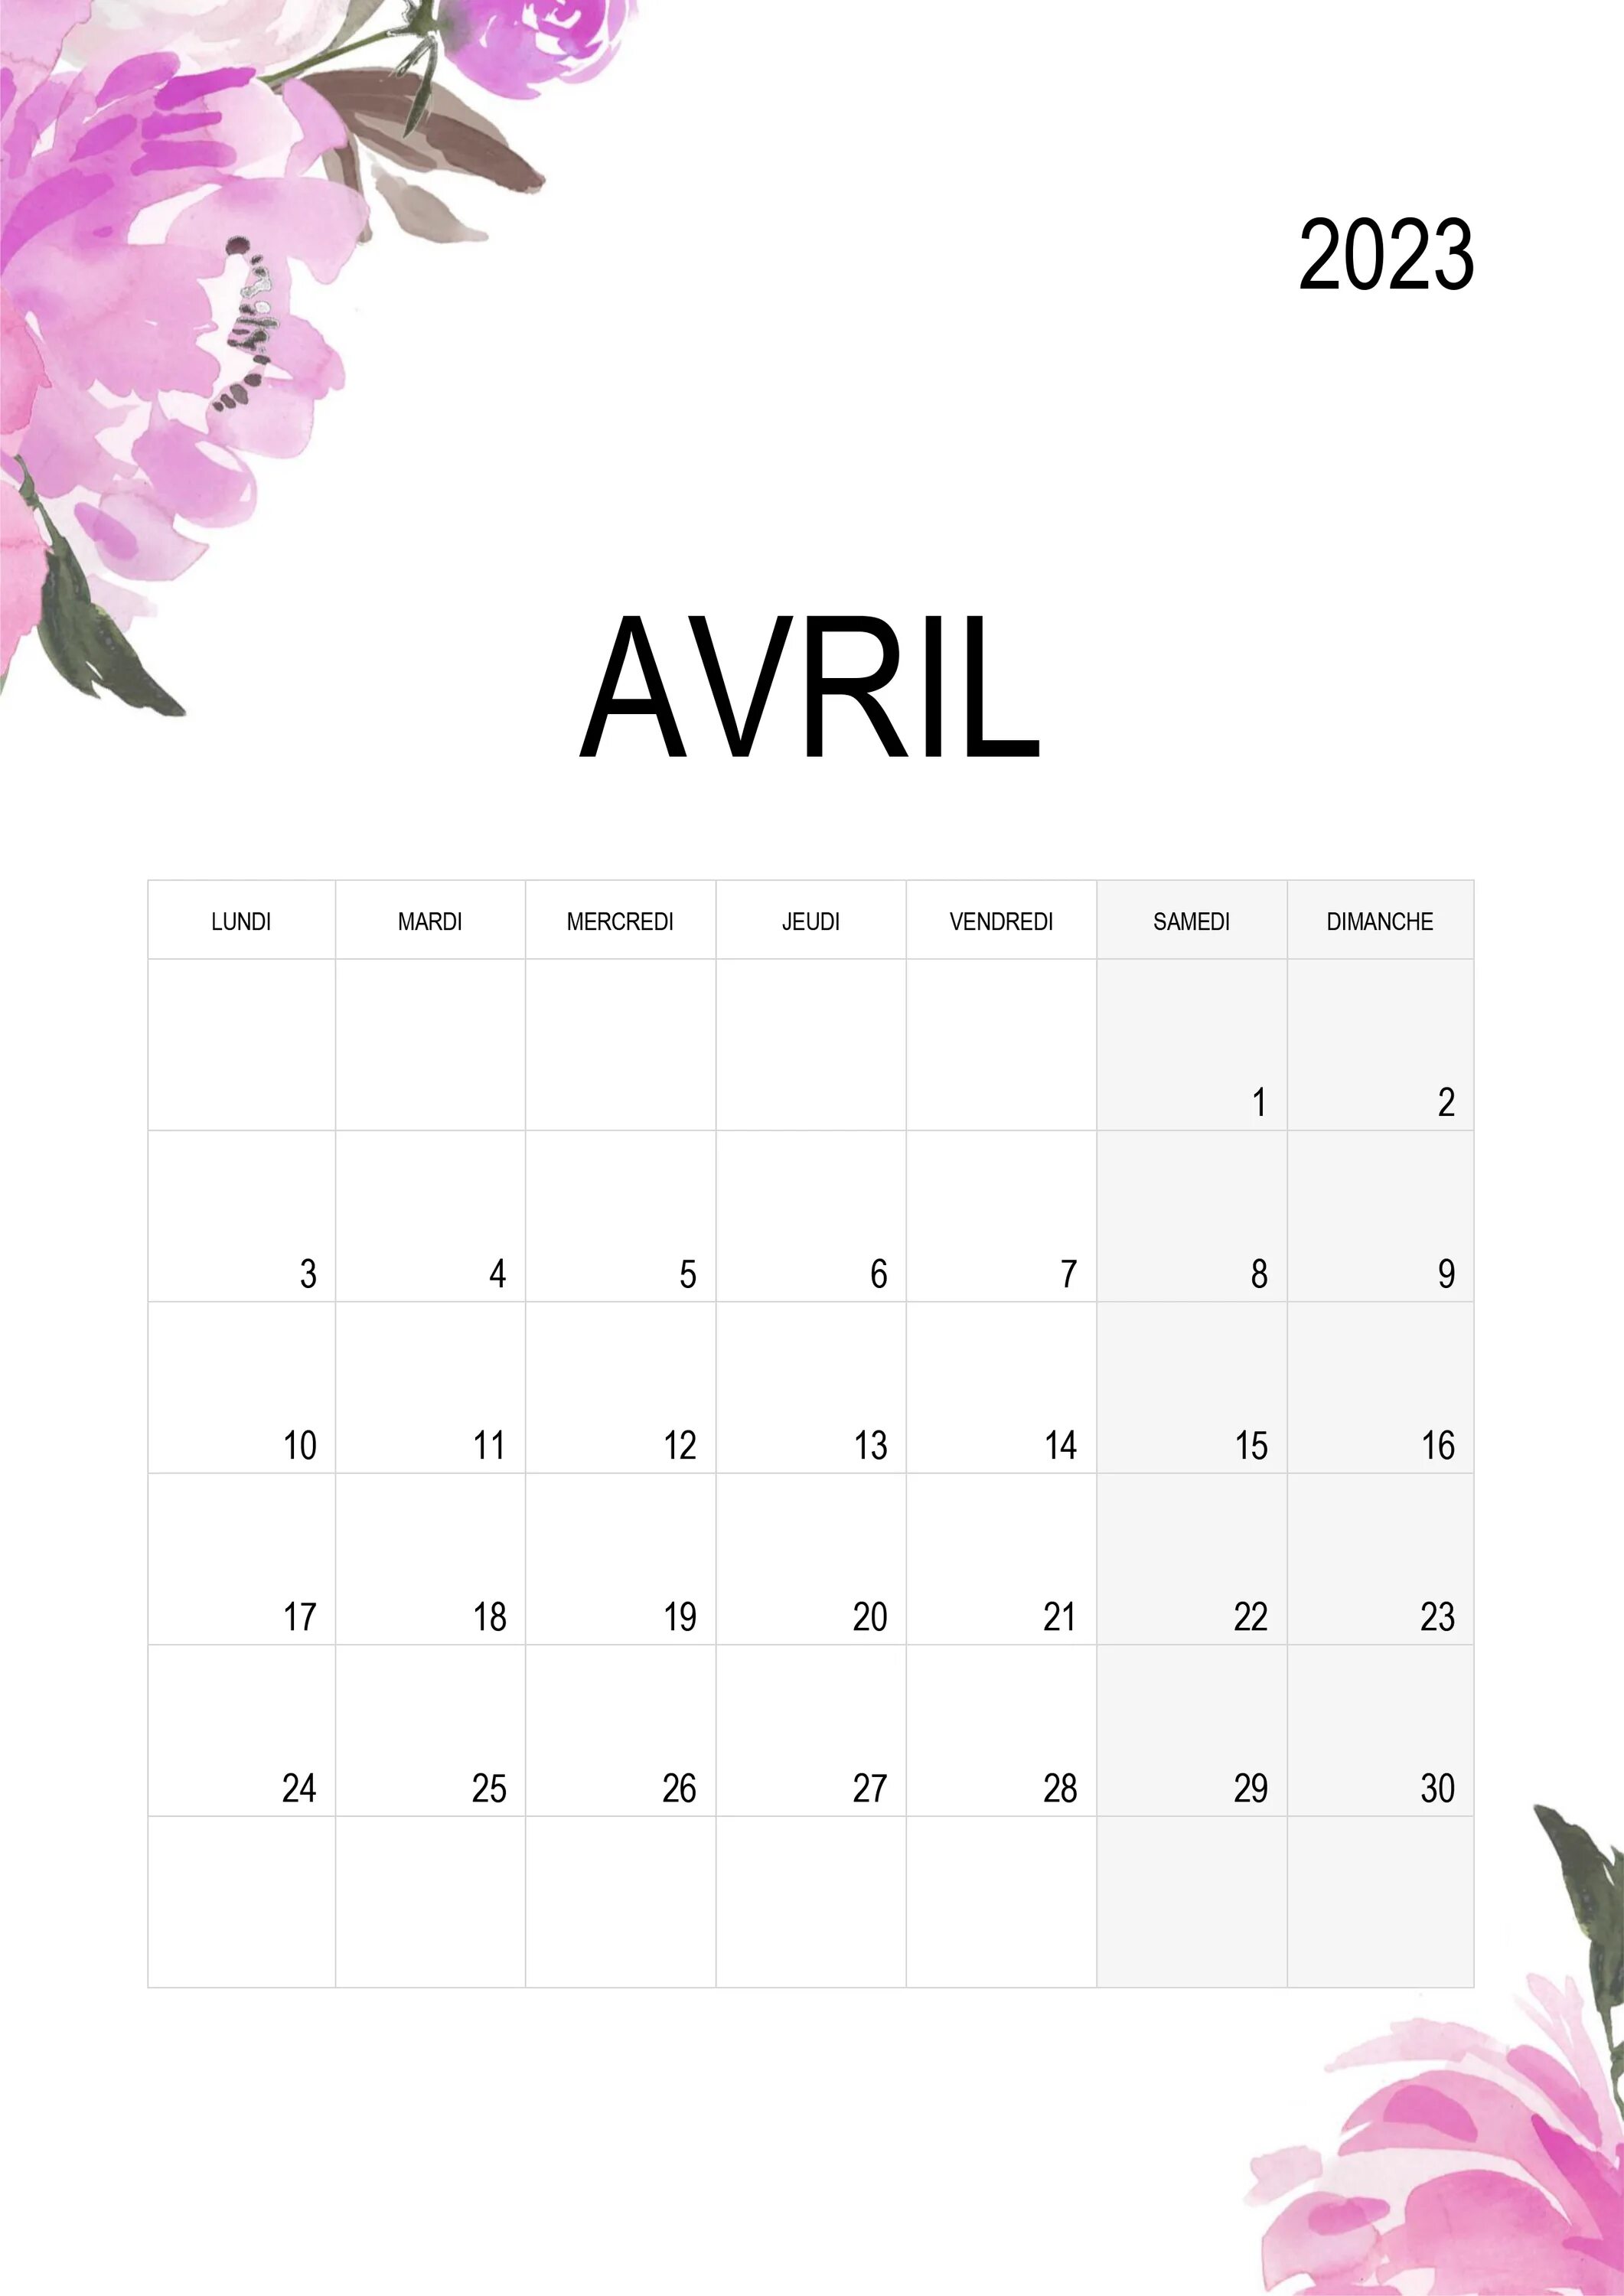 Календарь апрель. Календарь апрель 2023. Календарь на 2023 апрель апрель. Календарь на 2023 календарь на апрель 2023.